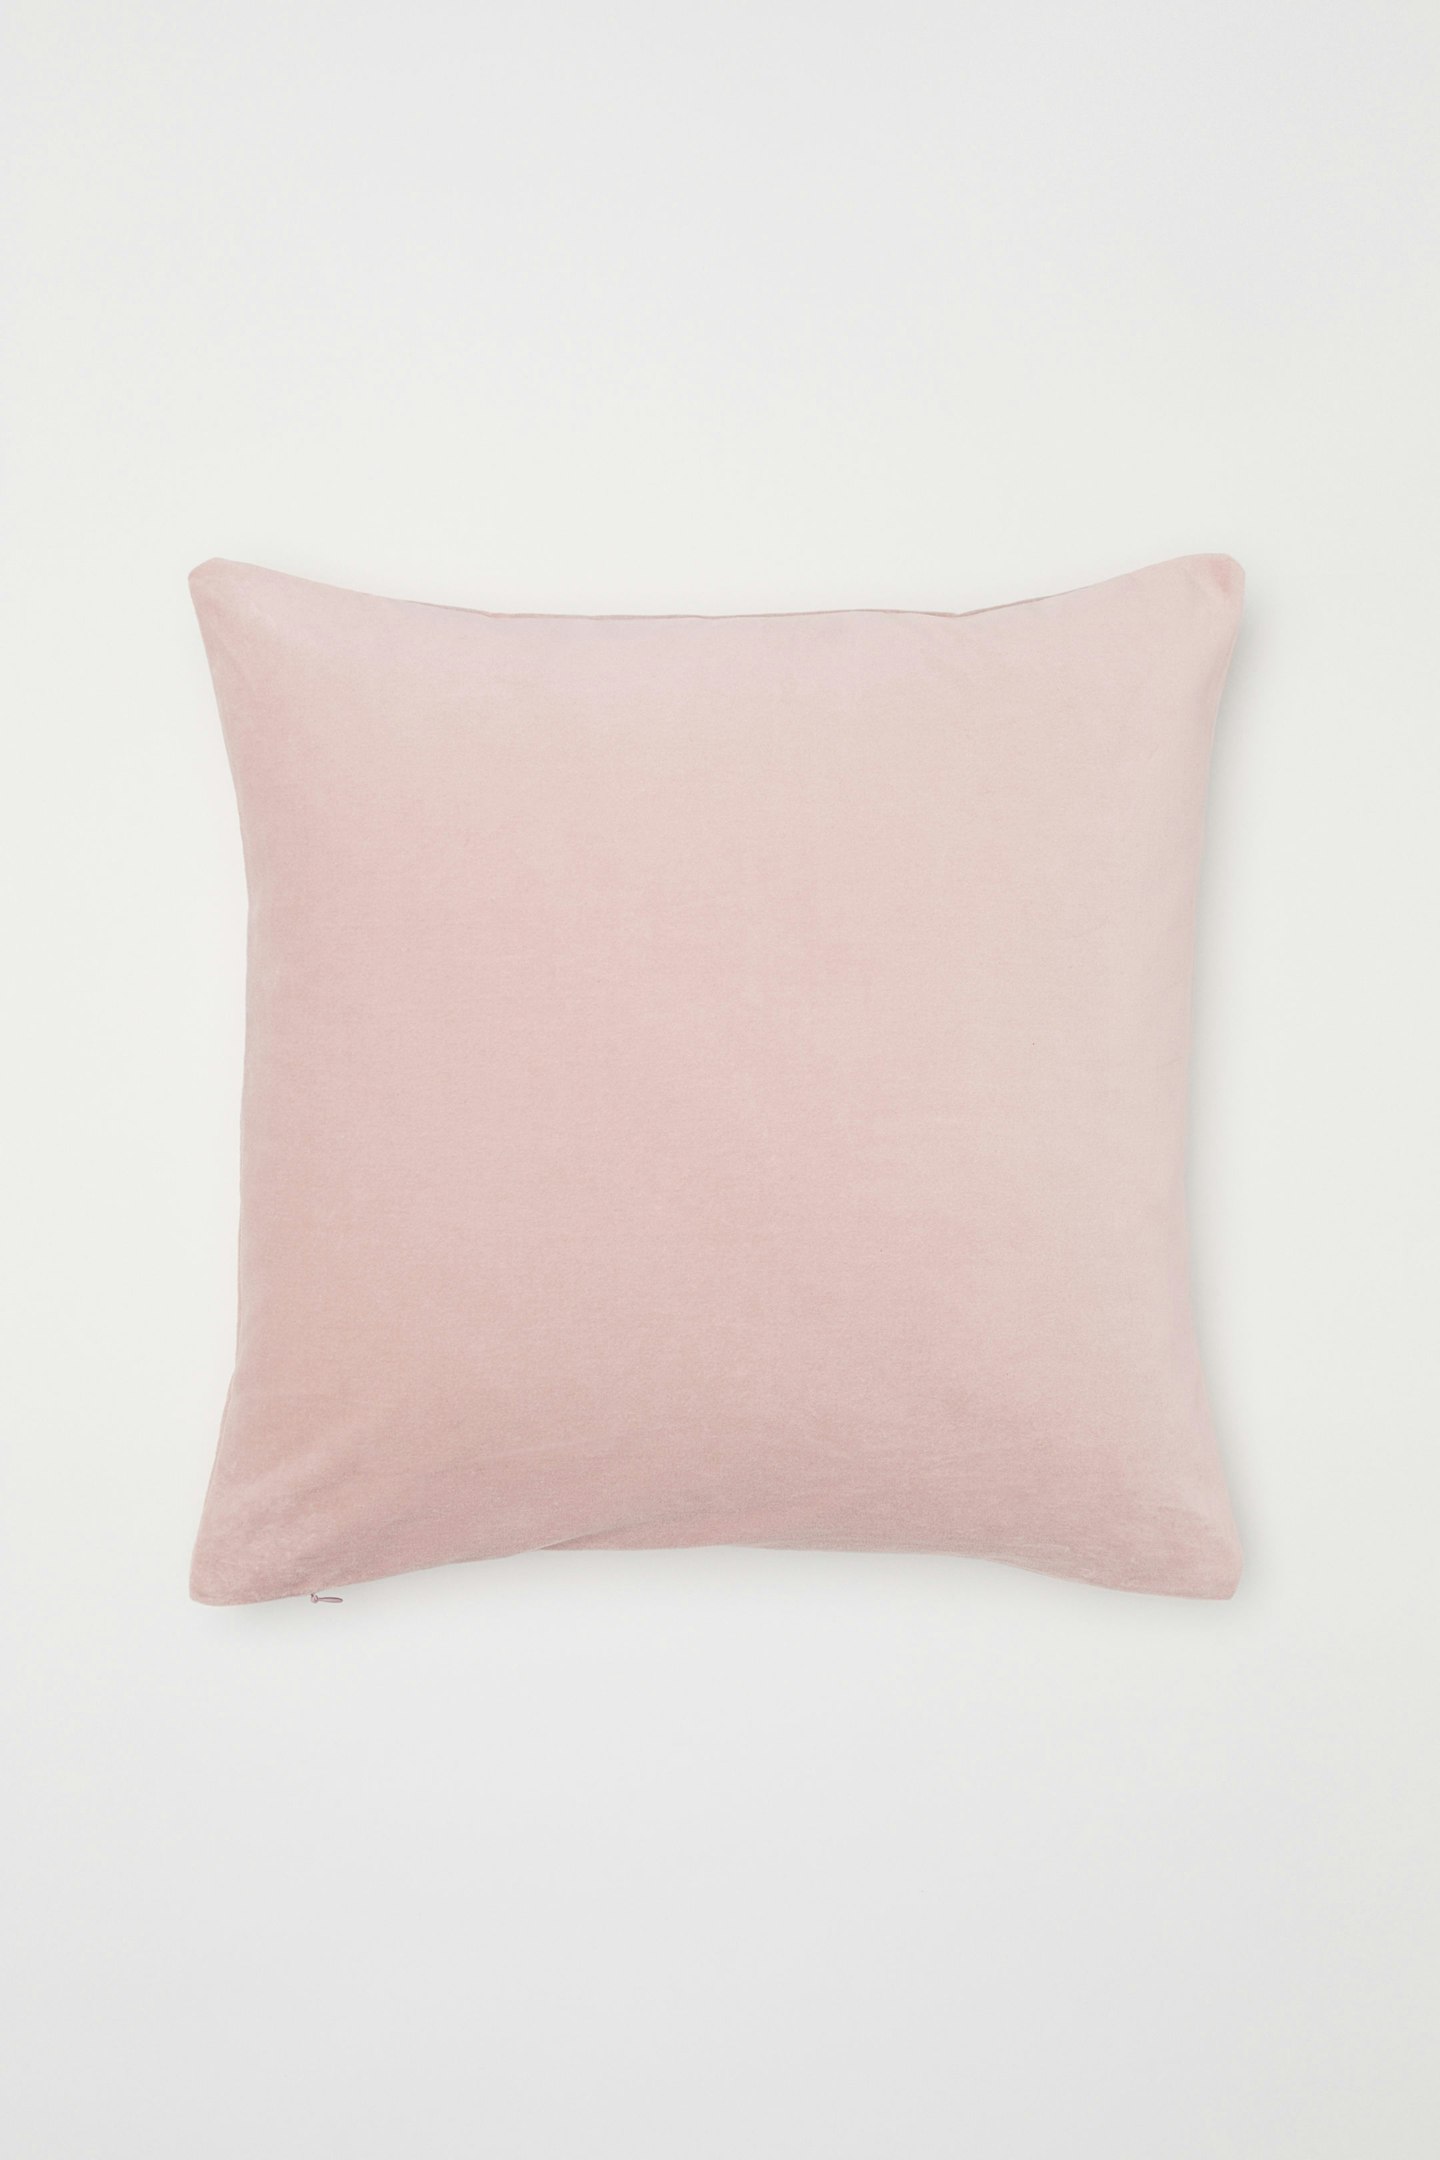 Cotton velvet cushion cover, £6.99